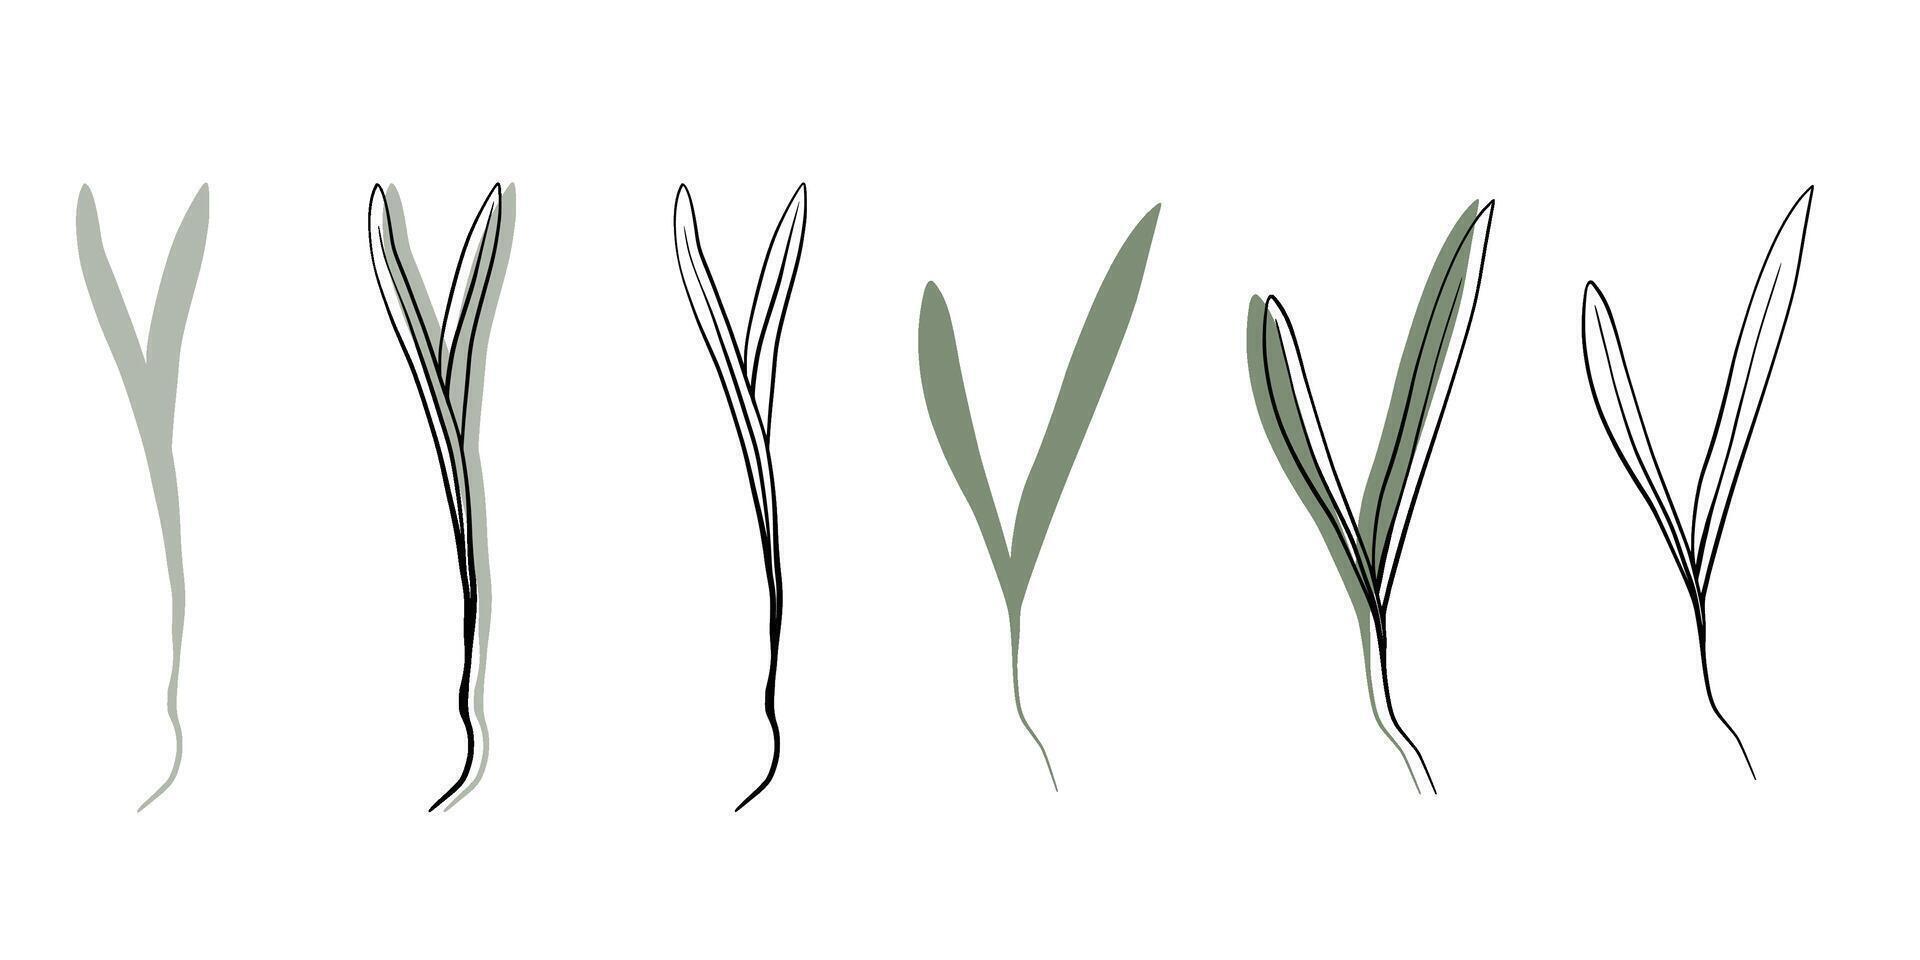 Espinacas microgreens vector mano dibujado ilustración. contorno y verde planta. coles de girasol planta. conjunto para diseño menú, logo, embalaje de apropiado nutrición, microelementos, sano estilo de vida